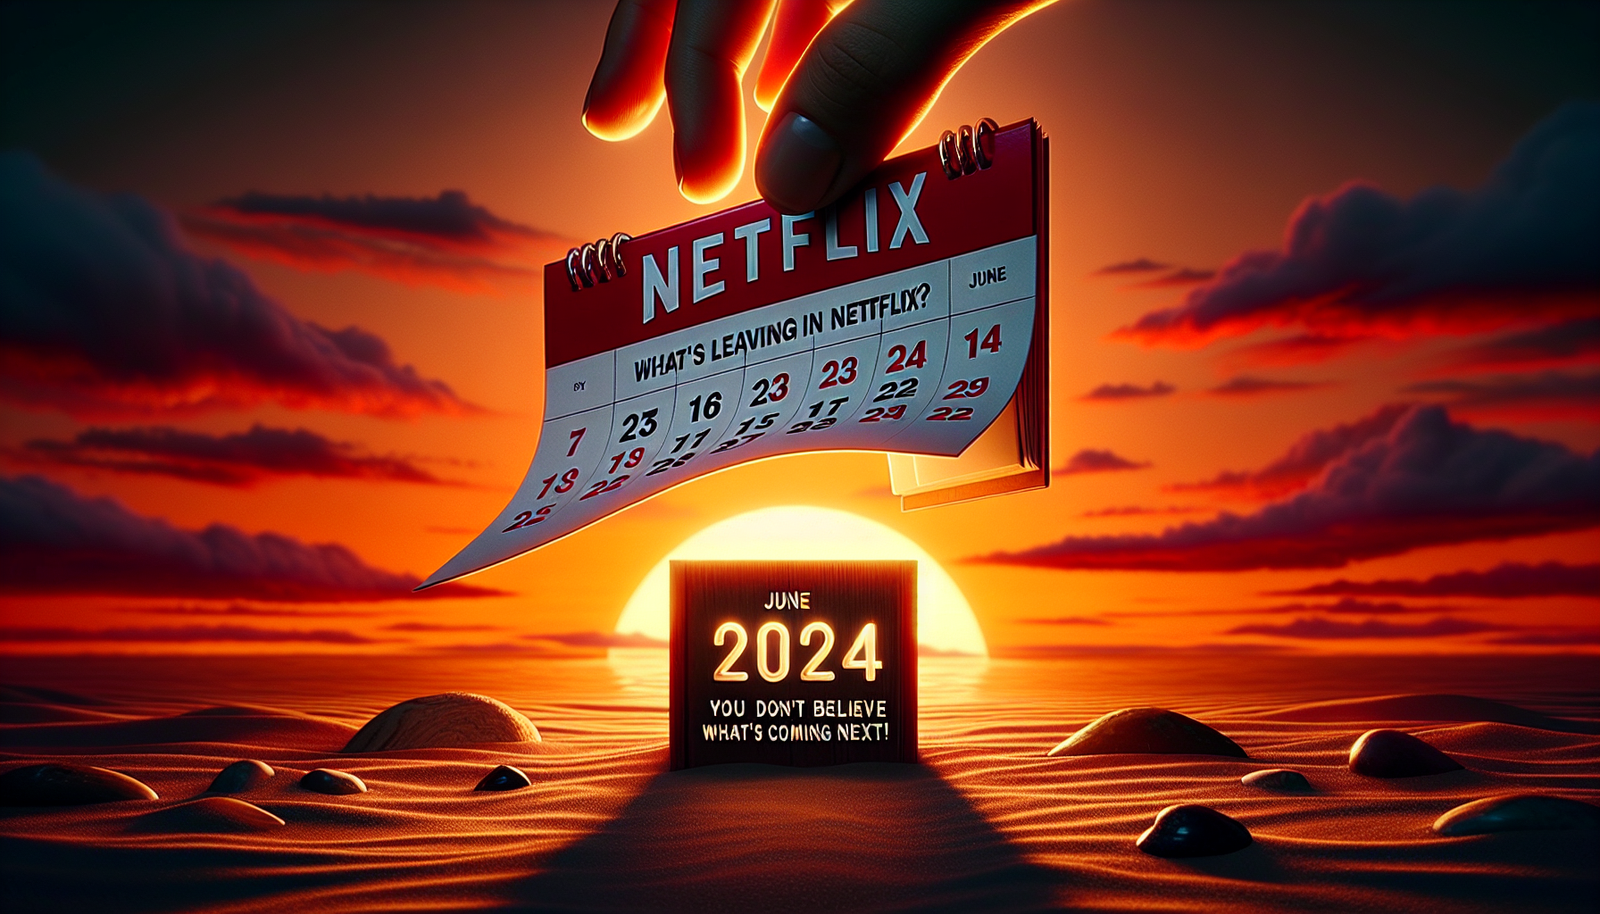 Finden Sie heraus, was Netflix im Juni 2024 veröffentlicht, und lassen Sie sich überraschen, was als Nächstes kommt! Verpassen Sie nicht die spannenden Veränderungen, die vor Ihnen liegen!